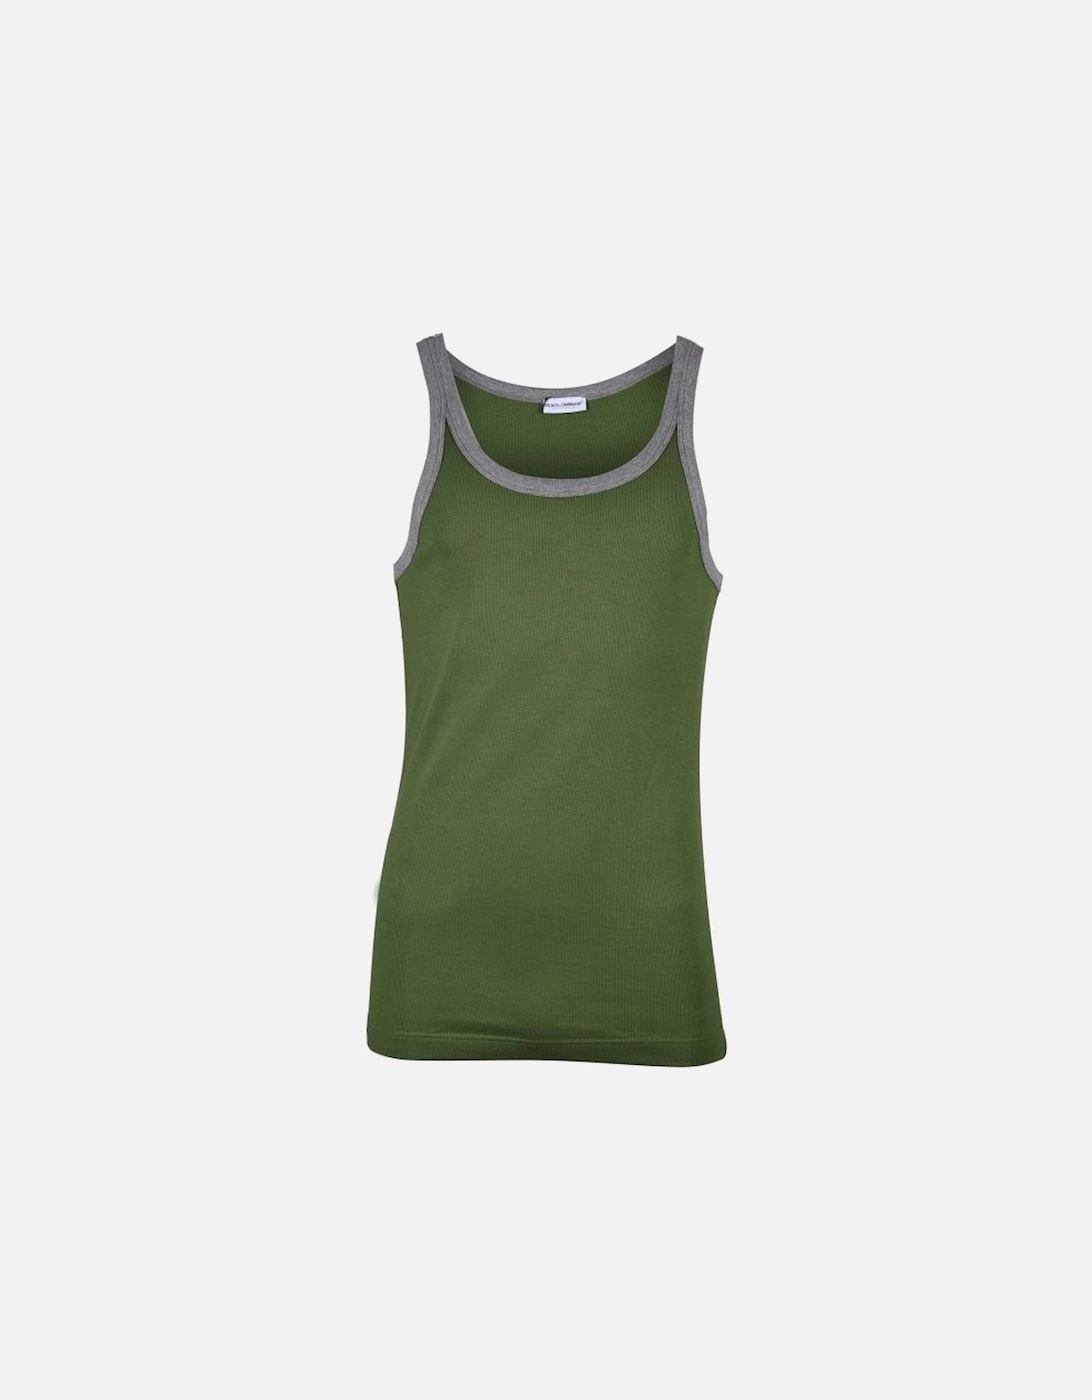 Contrast Trim Tank Top Vest, Green/grey, 5 of 4